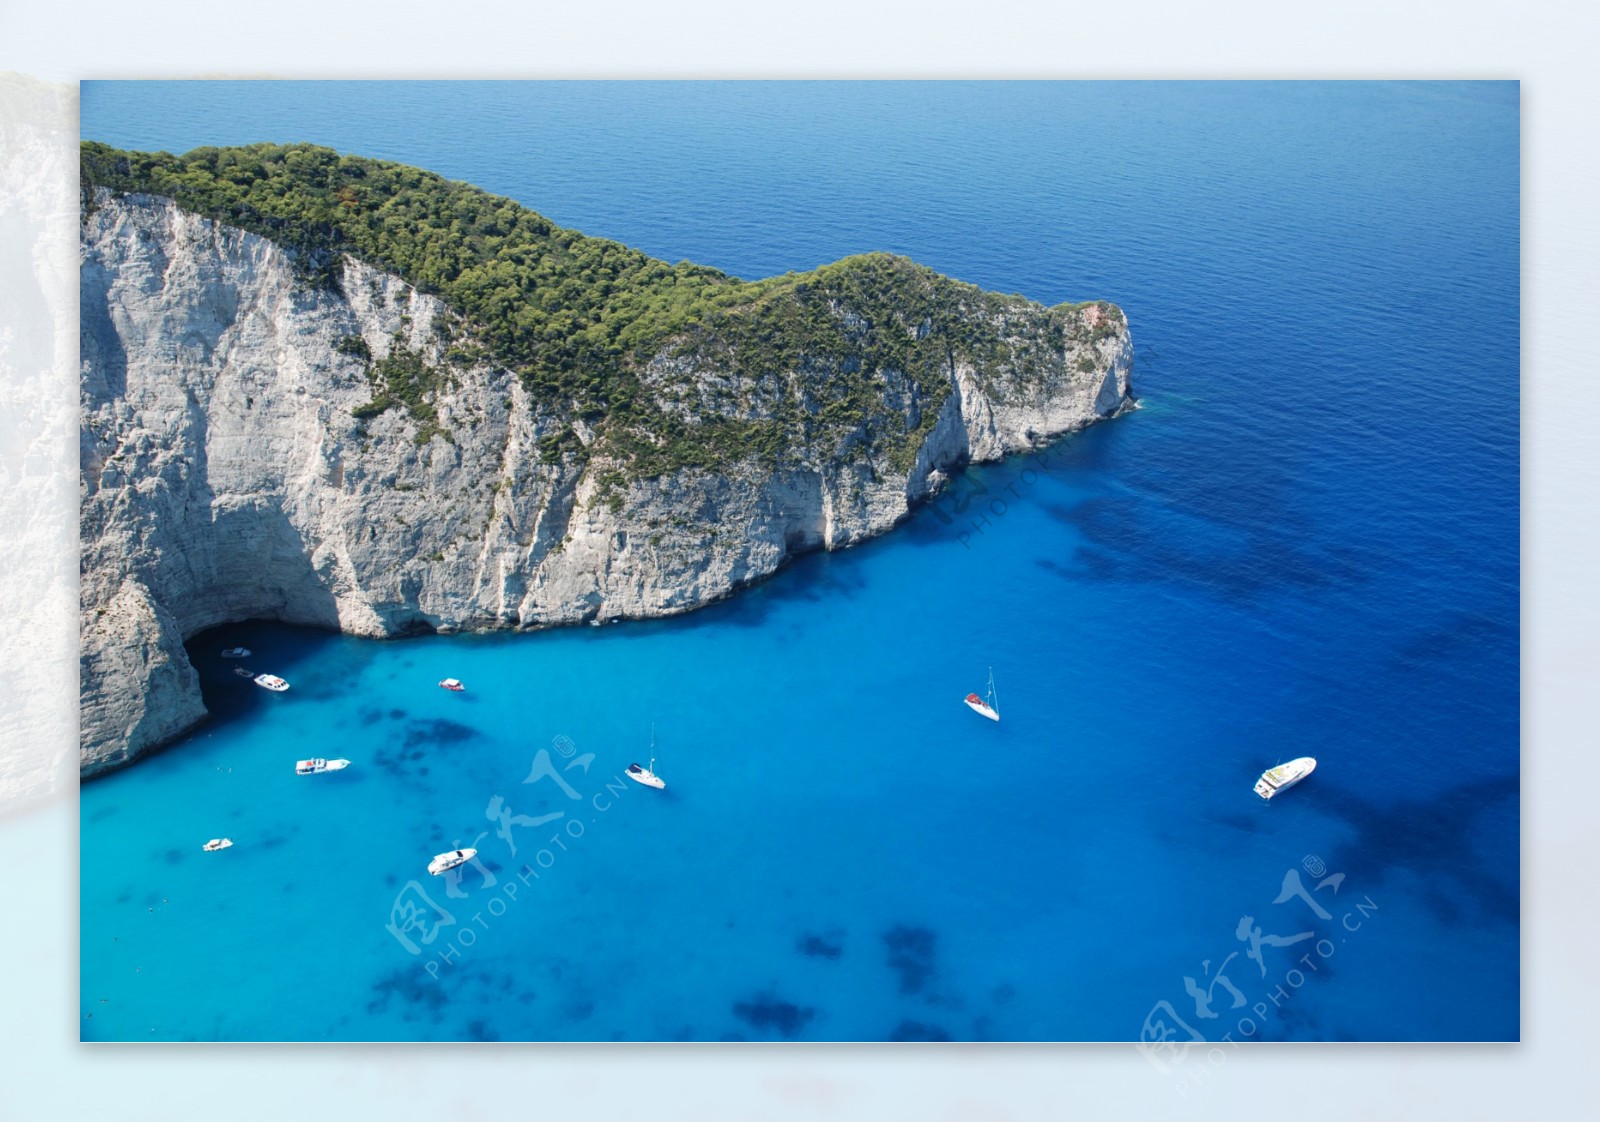 爱琴海好看的图片 希腊爱琴海图片欣赏 | 犀牛图片网